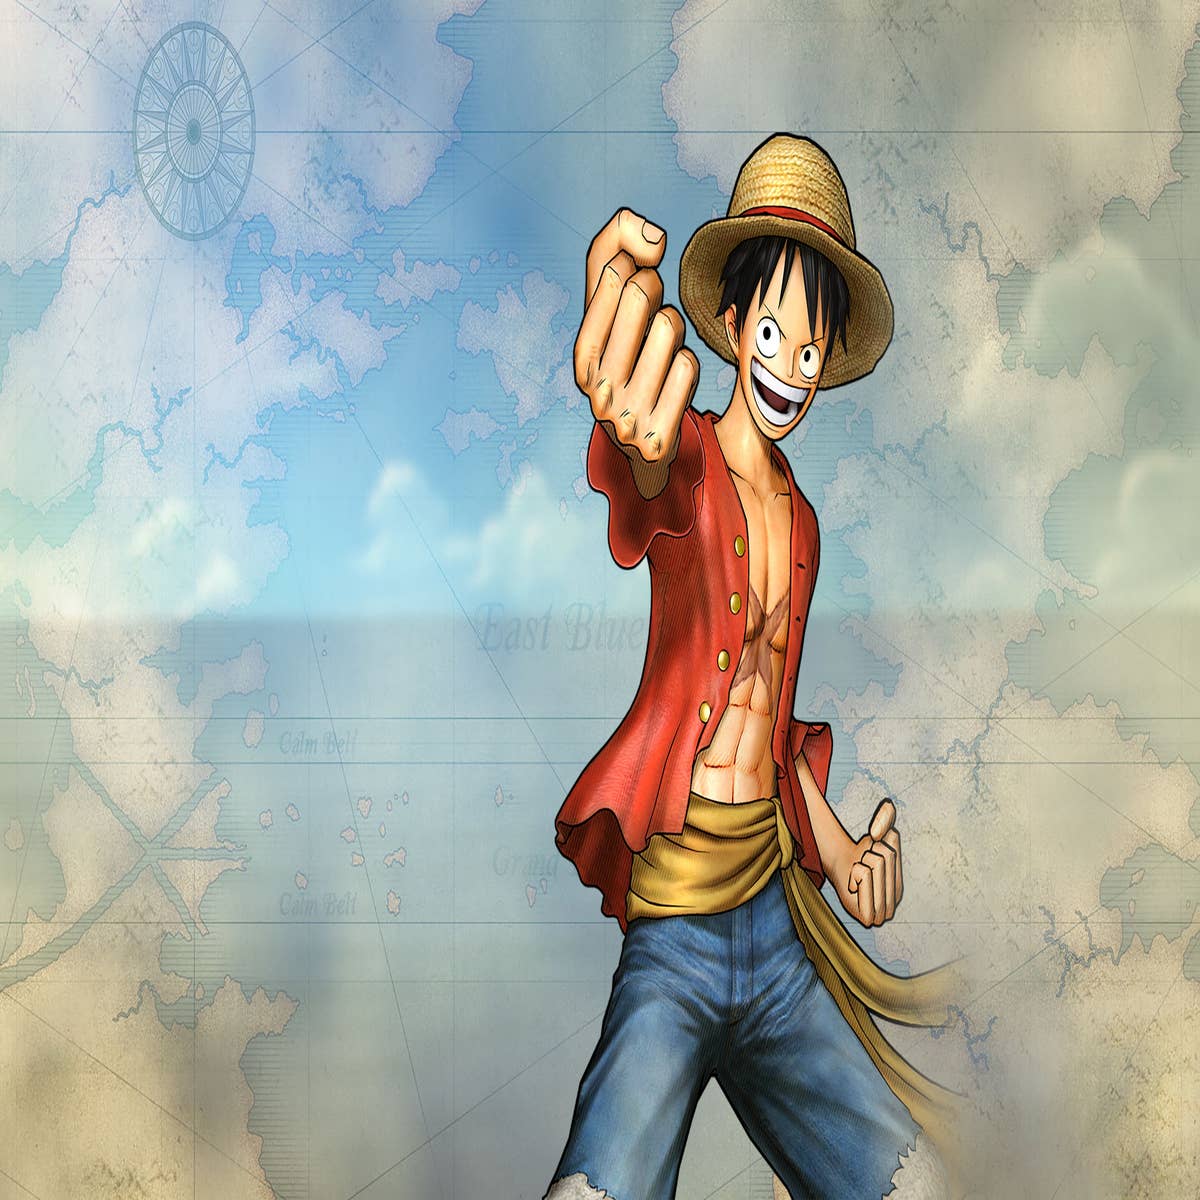 Ps3 Combo One Piece Japonês.  Jogo de Videogame Playstation 3